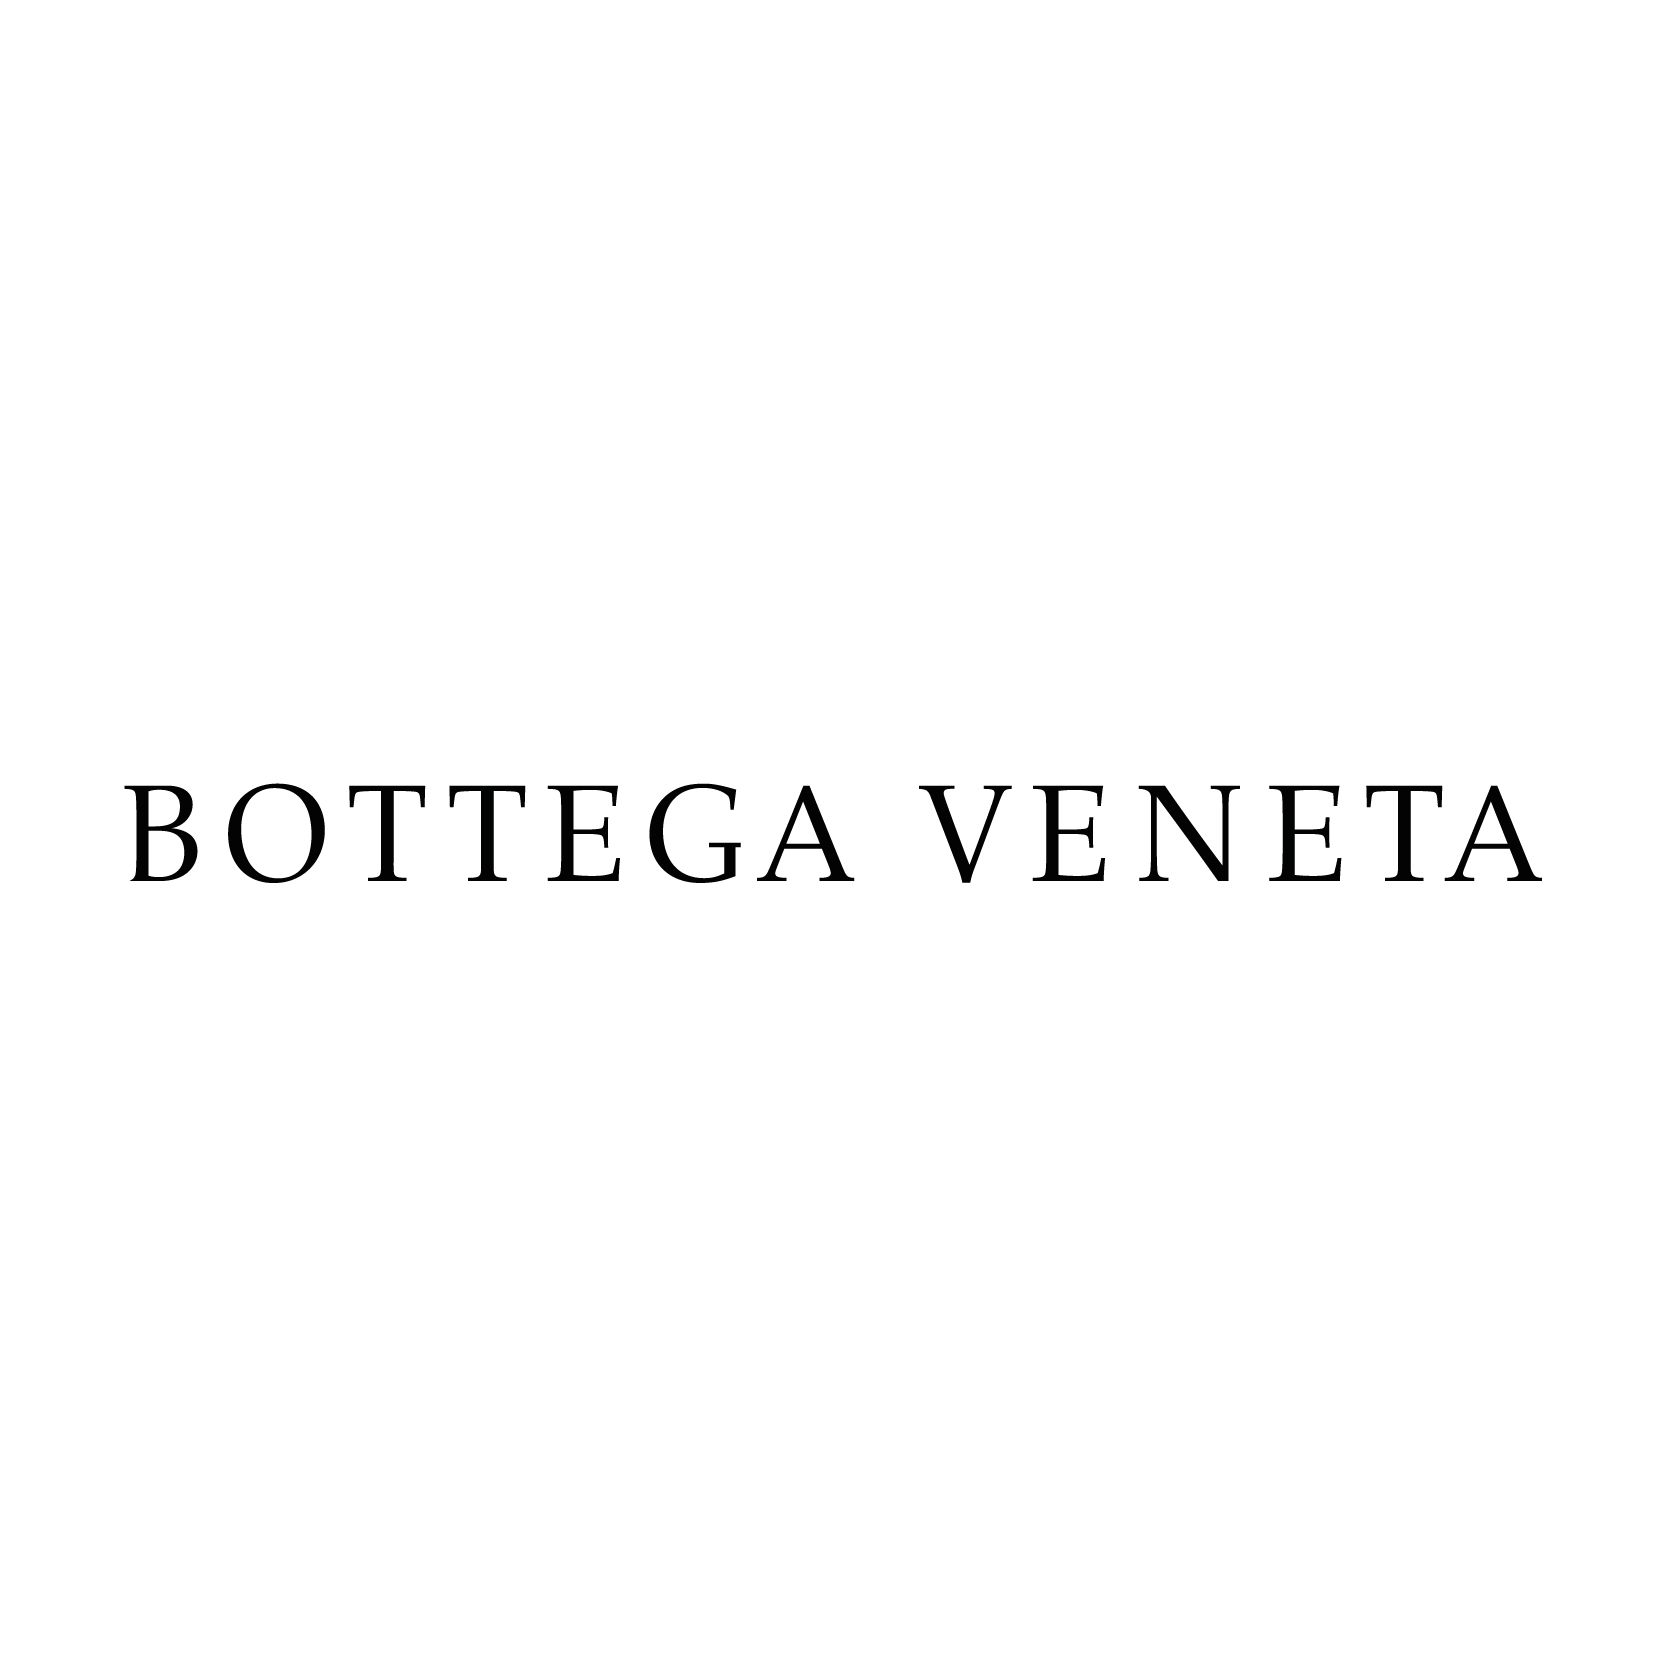 Bottega Veneta Home Logo - Bottega Veneta logo | Made In Italy